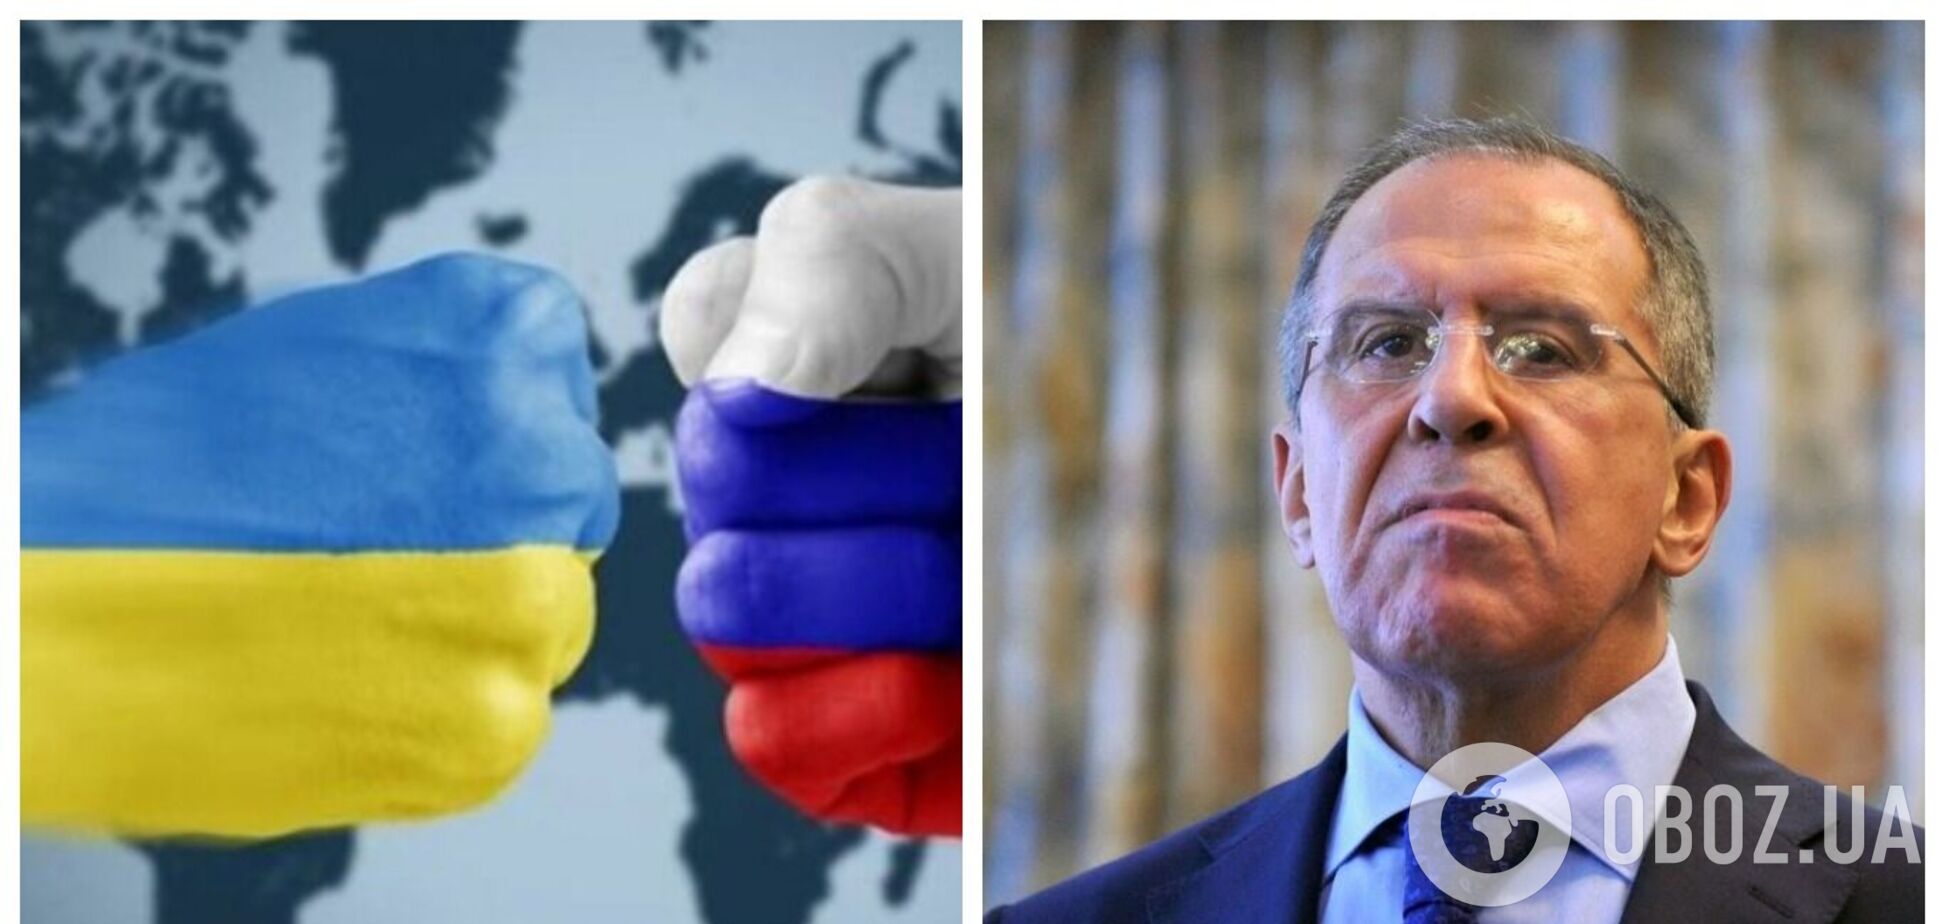 Лавров снова сменил риторику и заявил, что РФ готова к переговорам по поводу войны в Украине: возмутились даже россияне